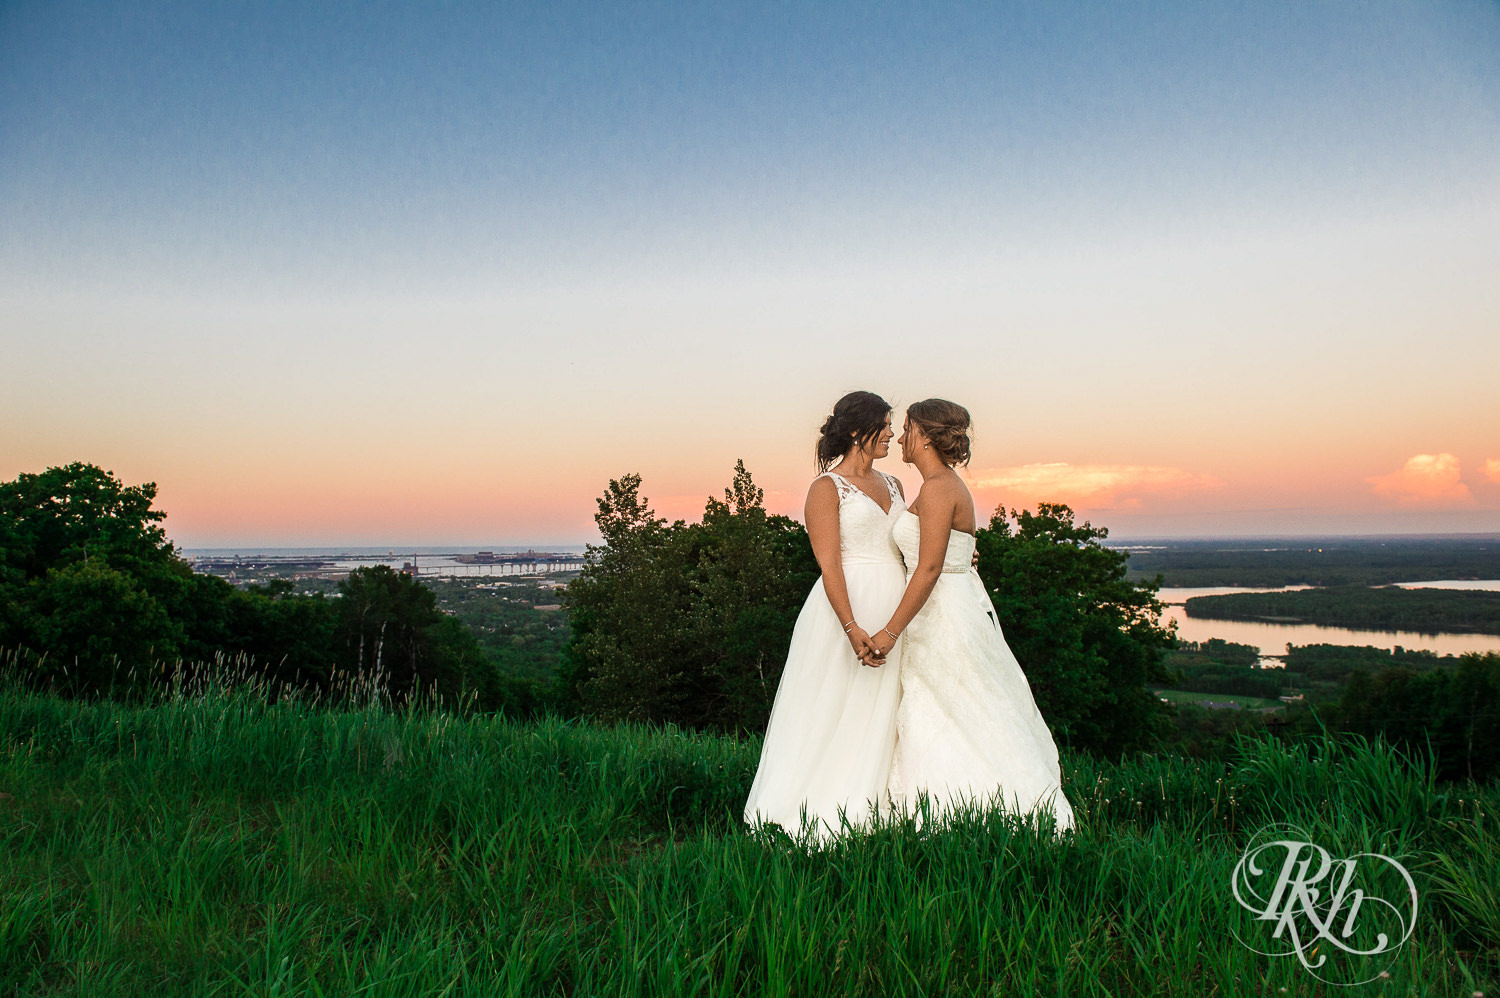 Lesbian brides smile during sunset at Spirit Mountain in Duluth, Minnesota.